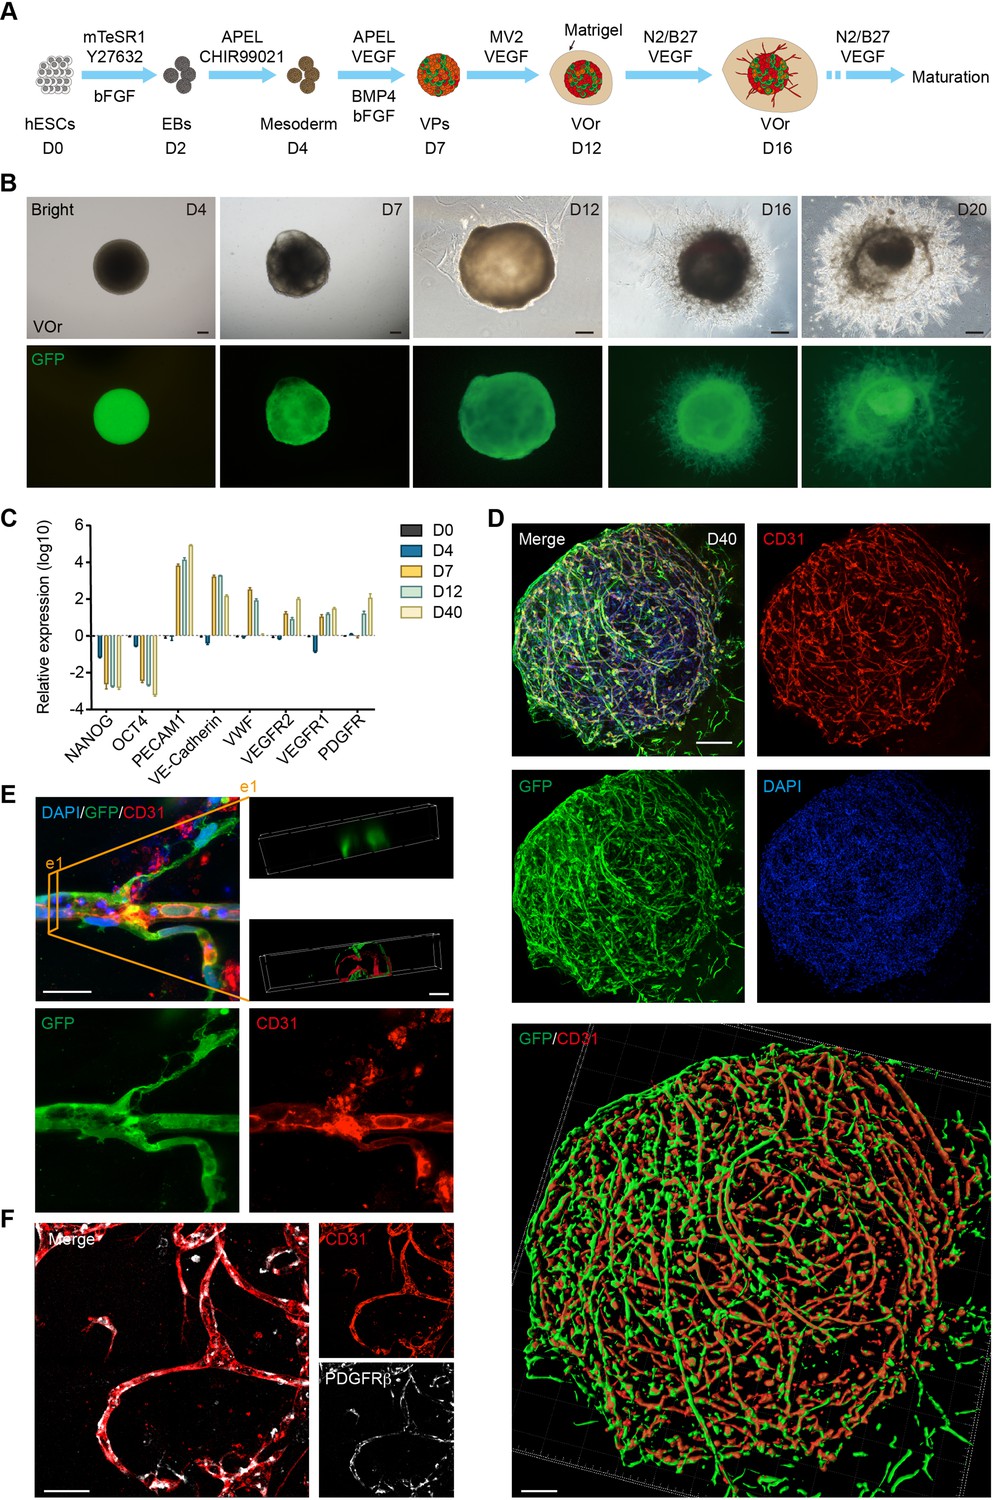 Brain-Region-Specific Organoids Using Mini-bioreactors for Modeling ZIKV  Exposure: Cell